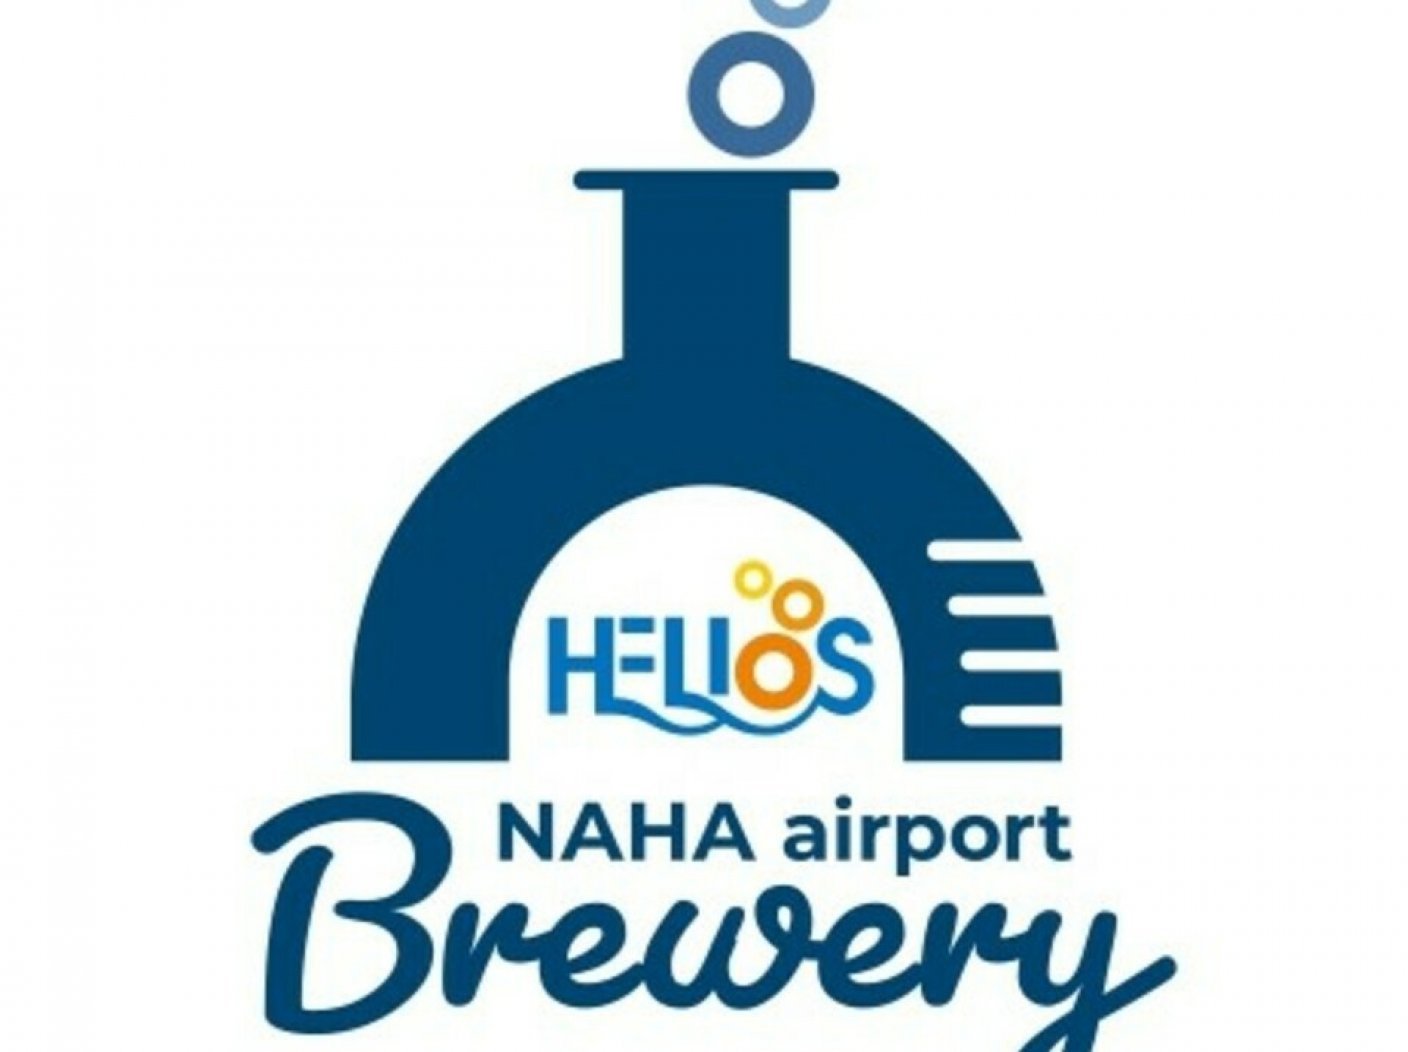 HELIOS NAHA airport Breweryの写真 14